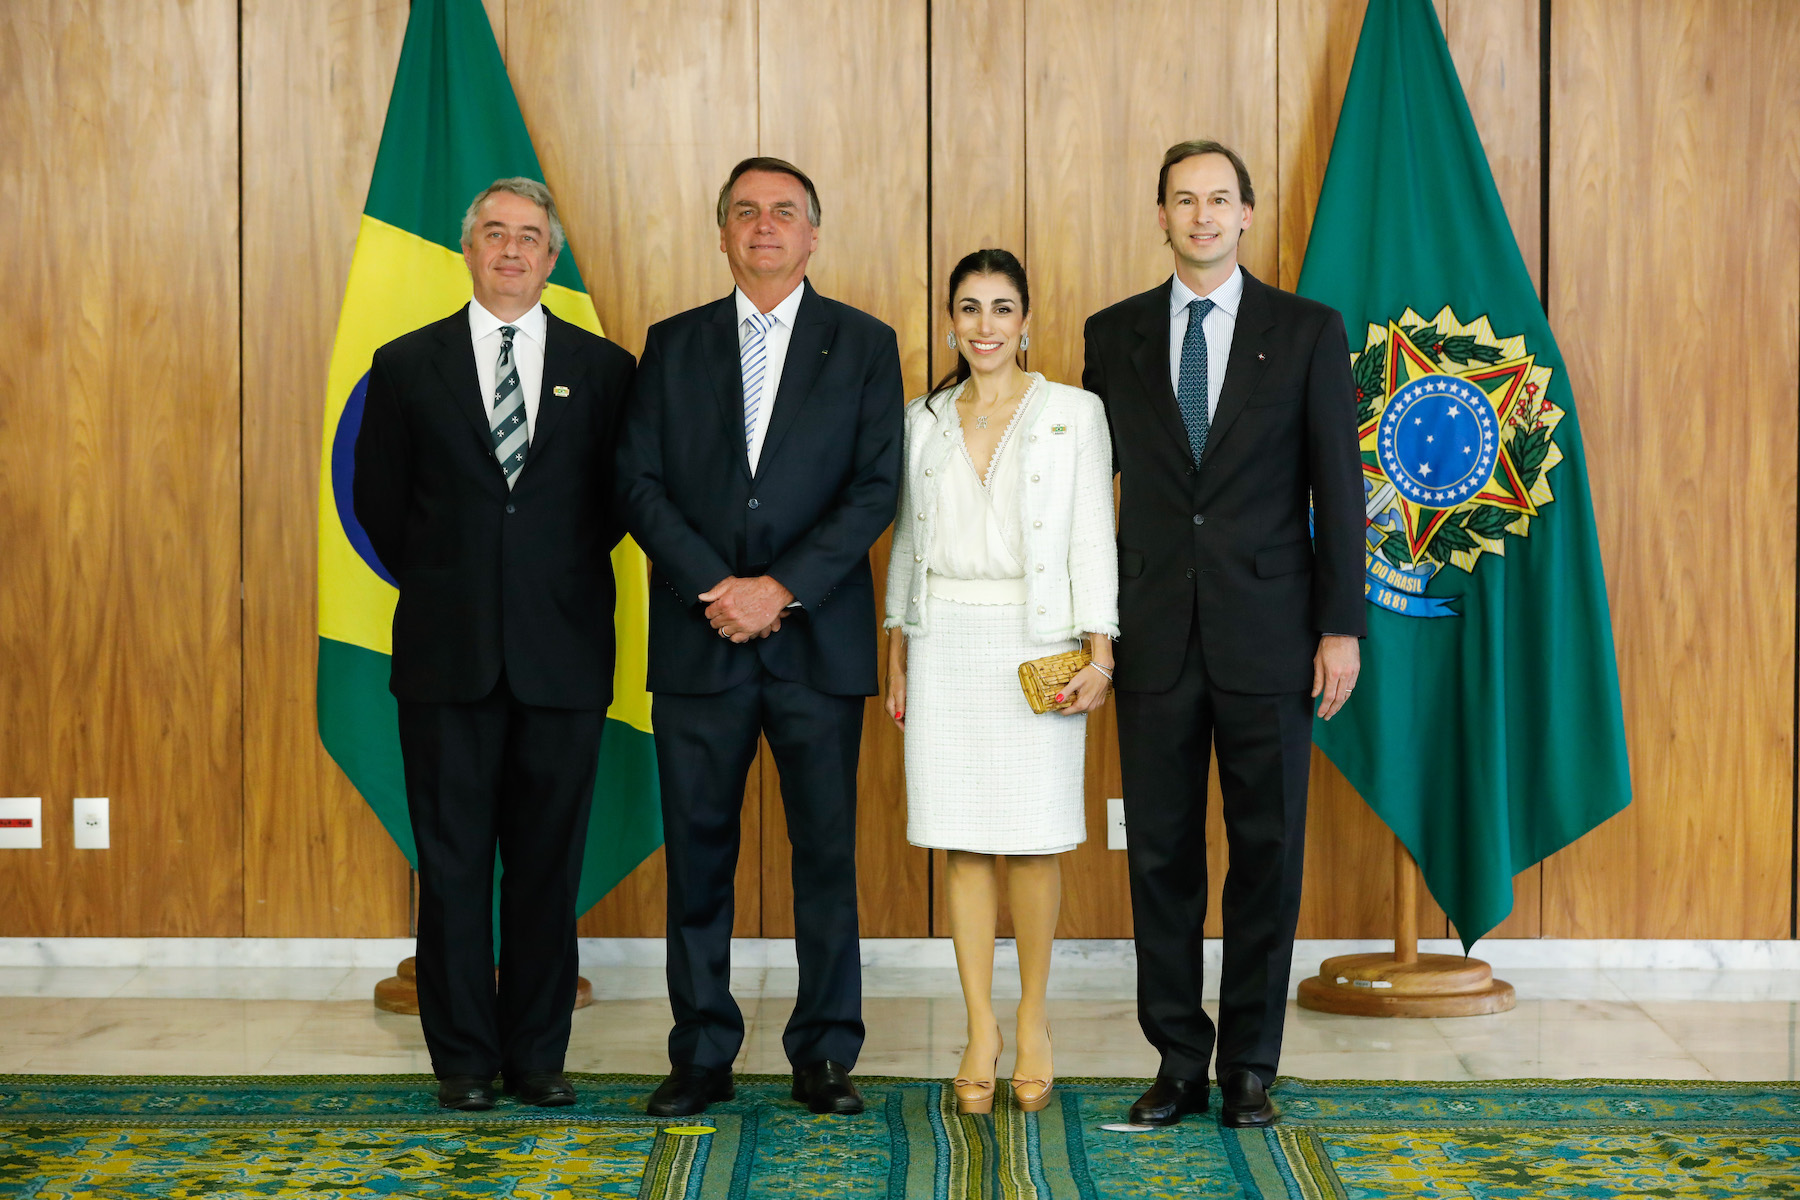 Der Präsident der Republik Brasilien nahm das Beglaubigungsschreiben von neuem Botschafter des Souveränen Malteserordens